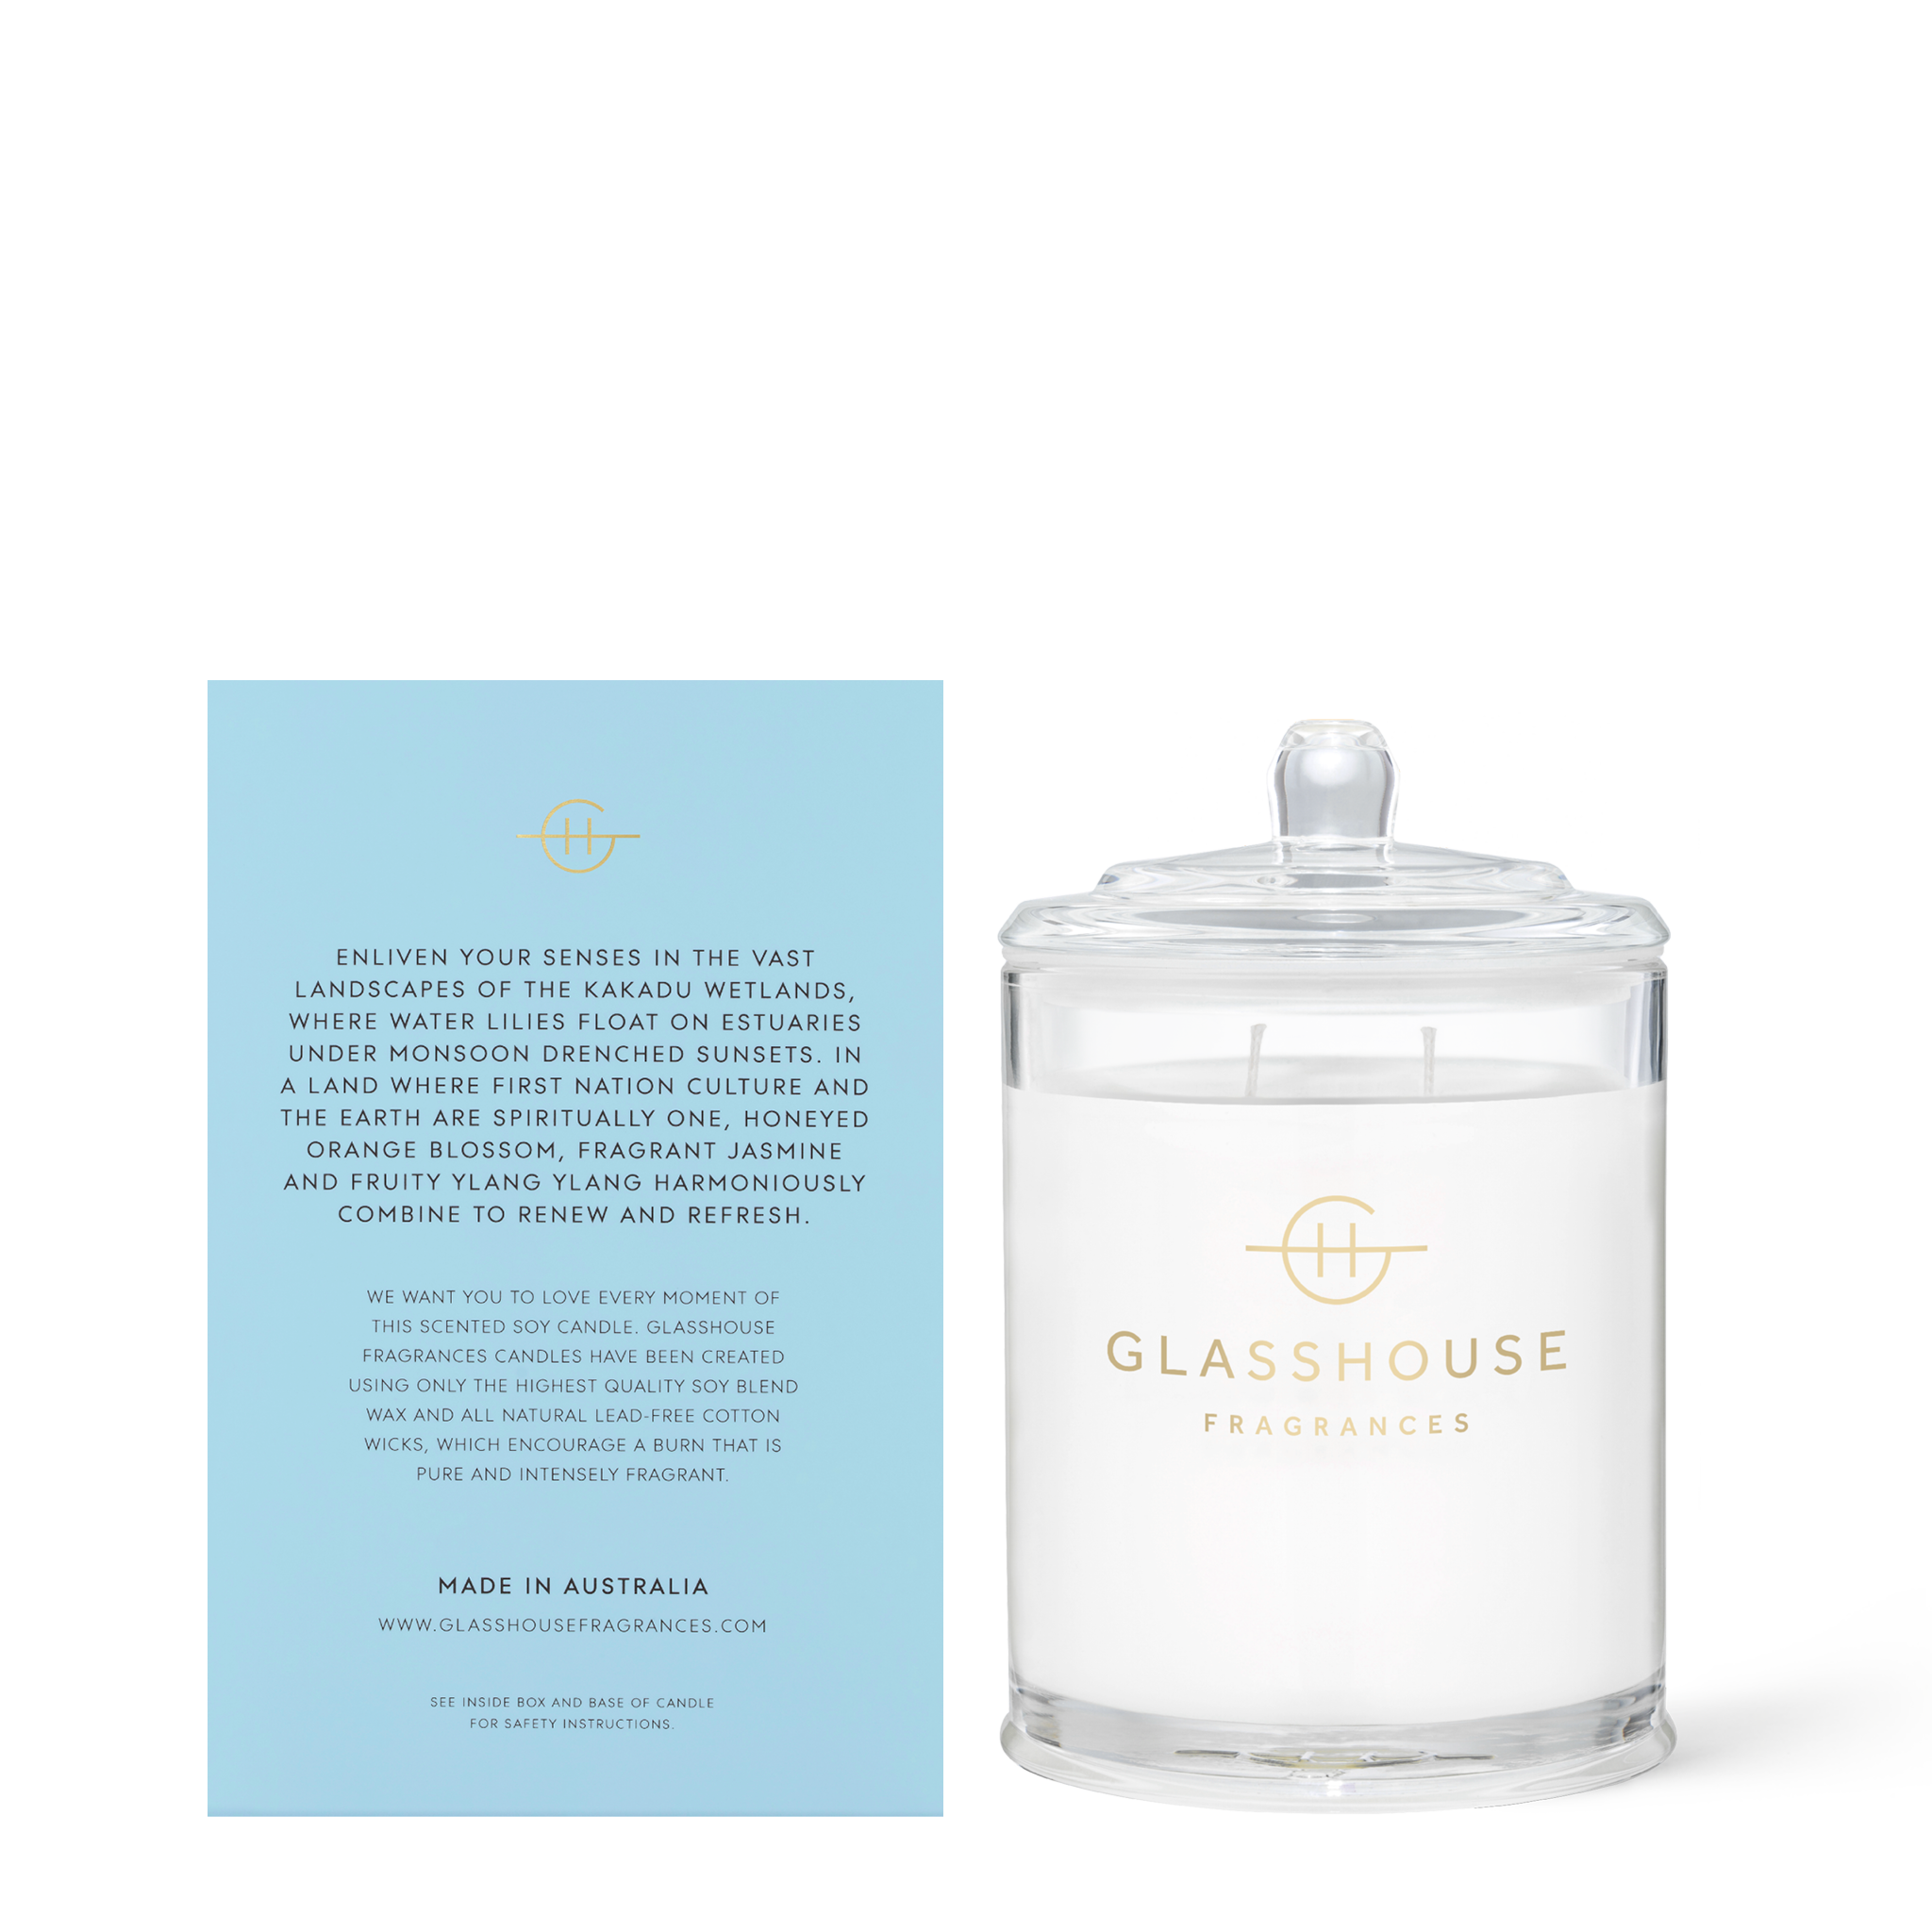 Glasshouse Fragrances 380g Soy Candle back of box product shot